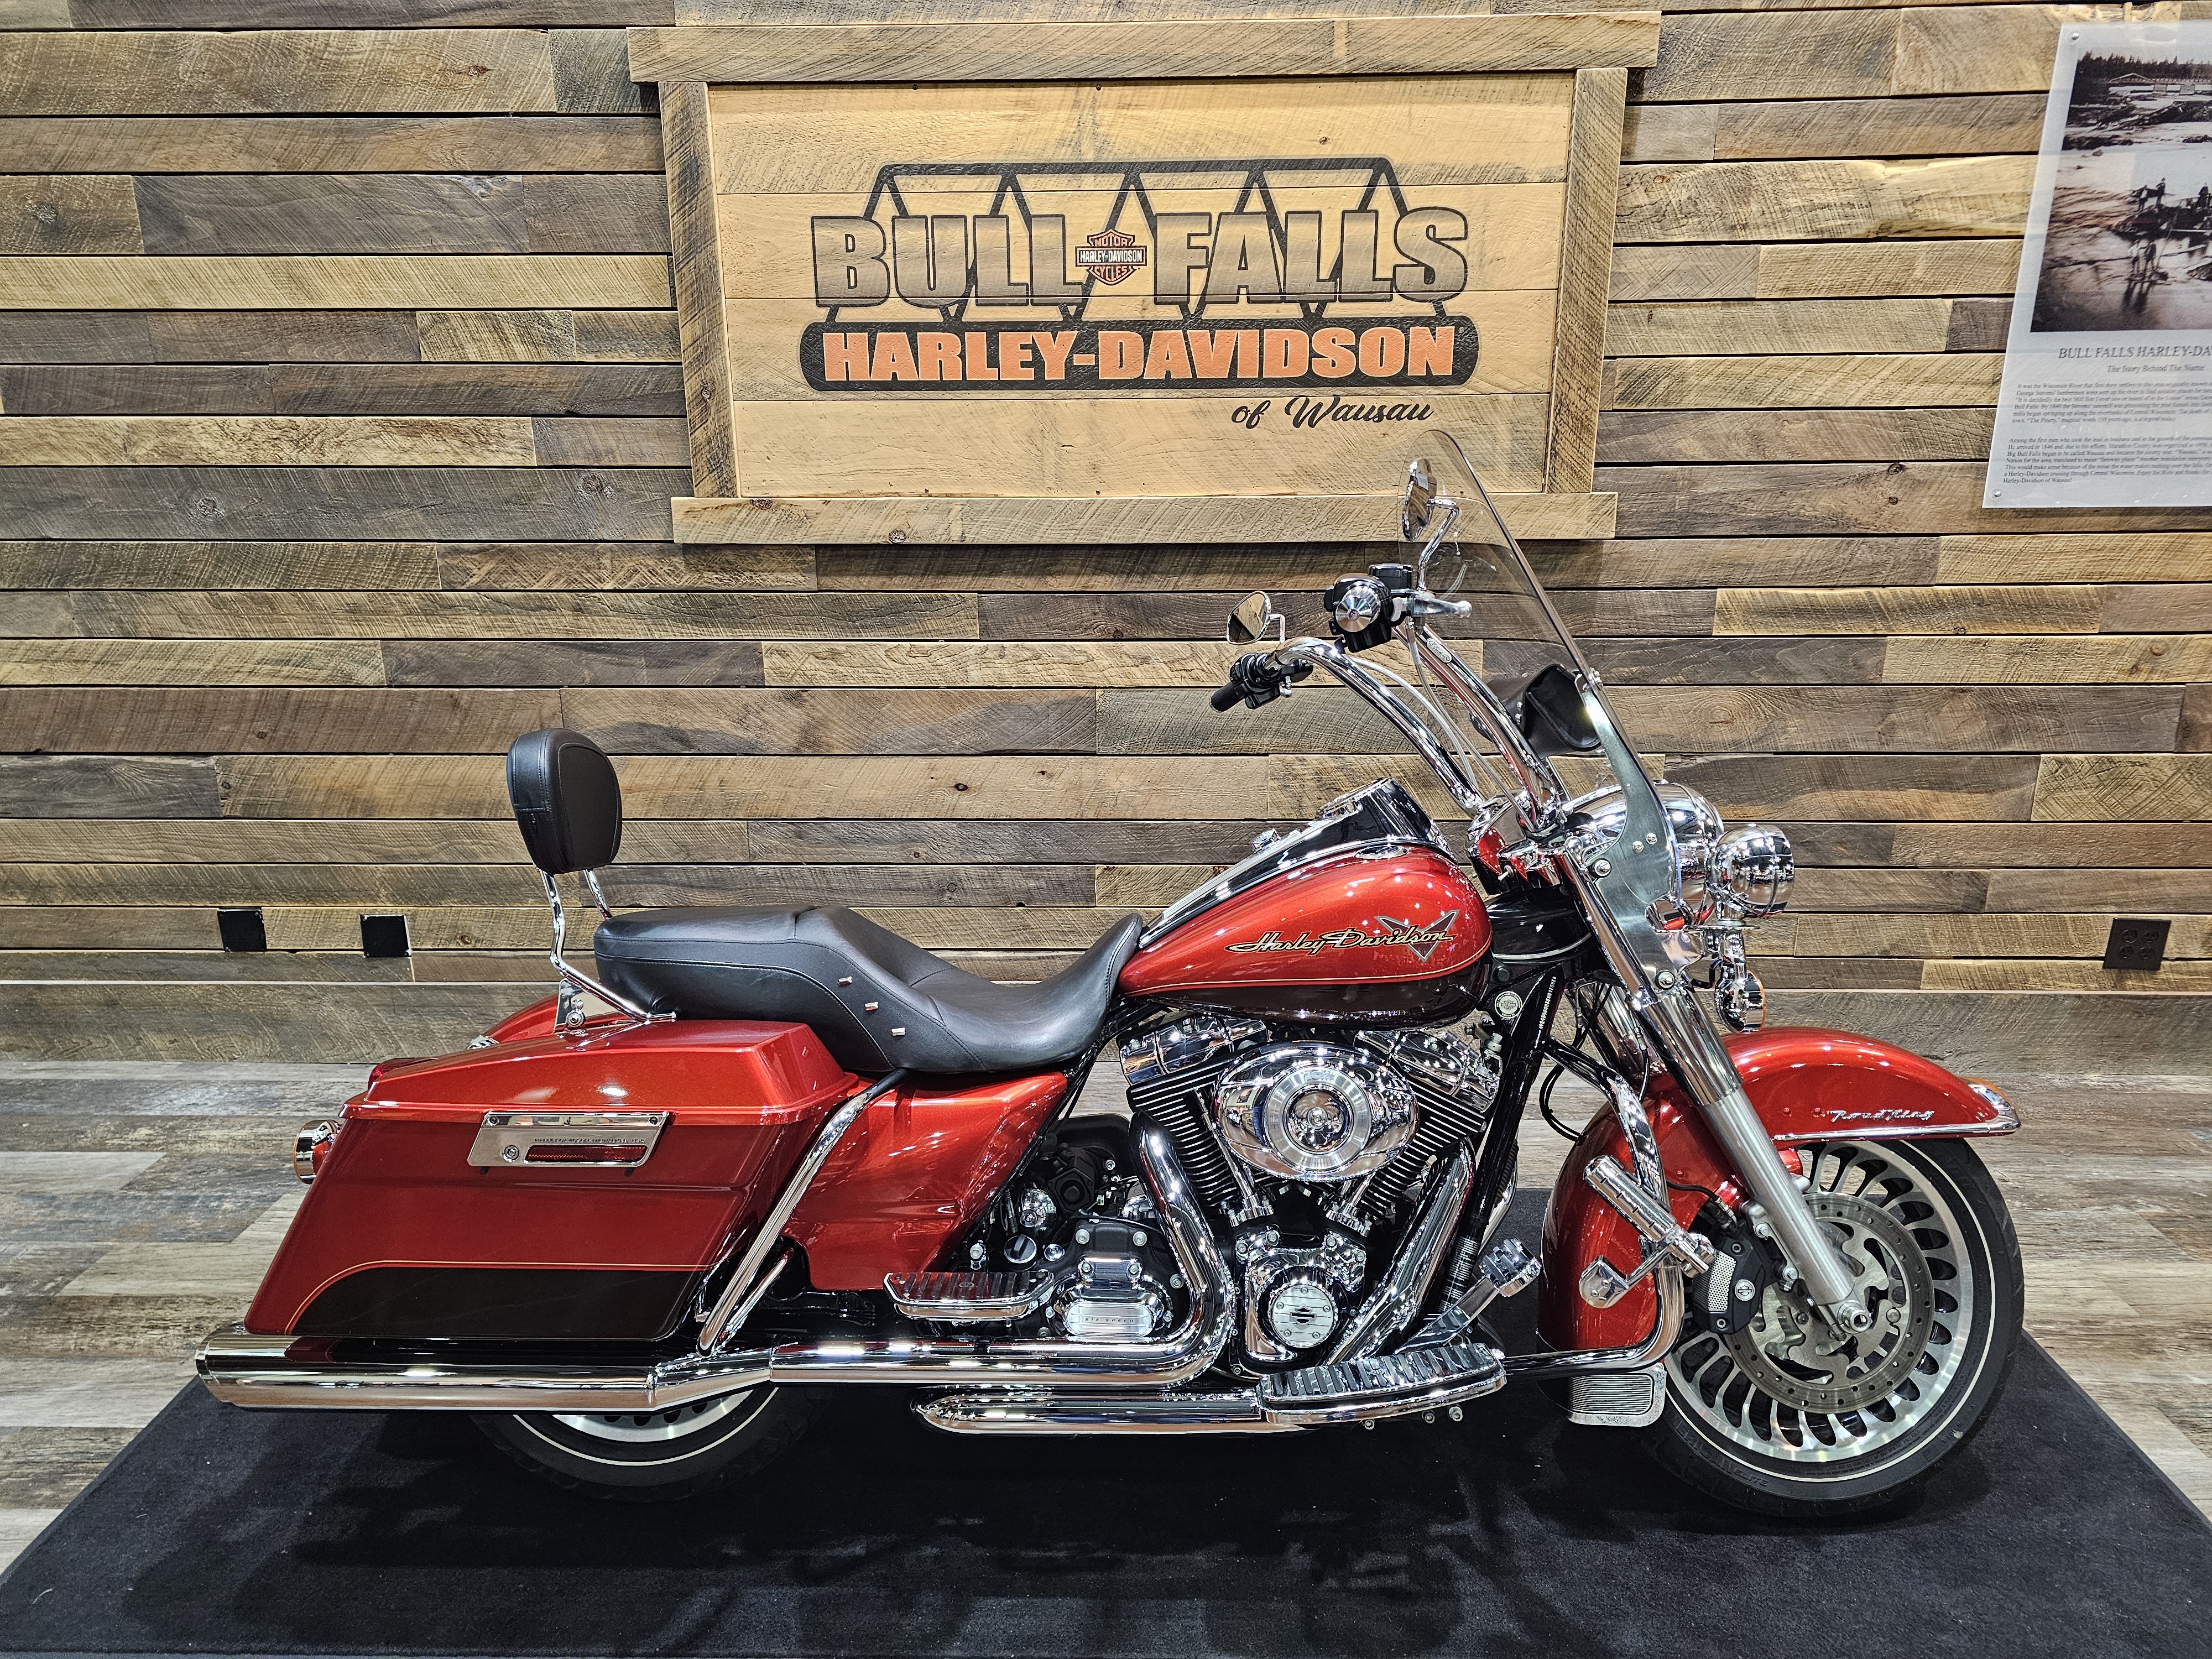 2013 Harley-Davidson Road King Base at Bull Falls Harley-Davidson